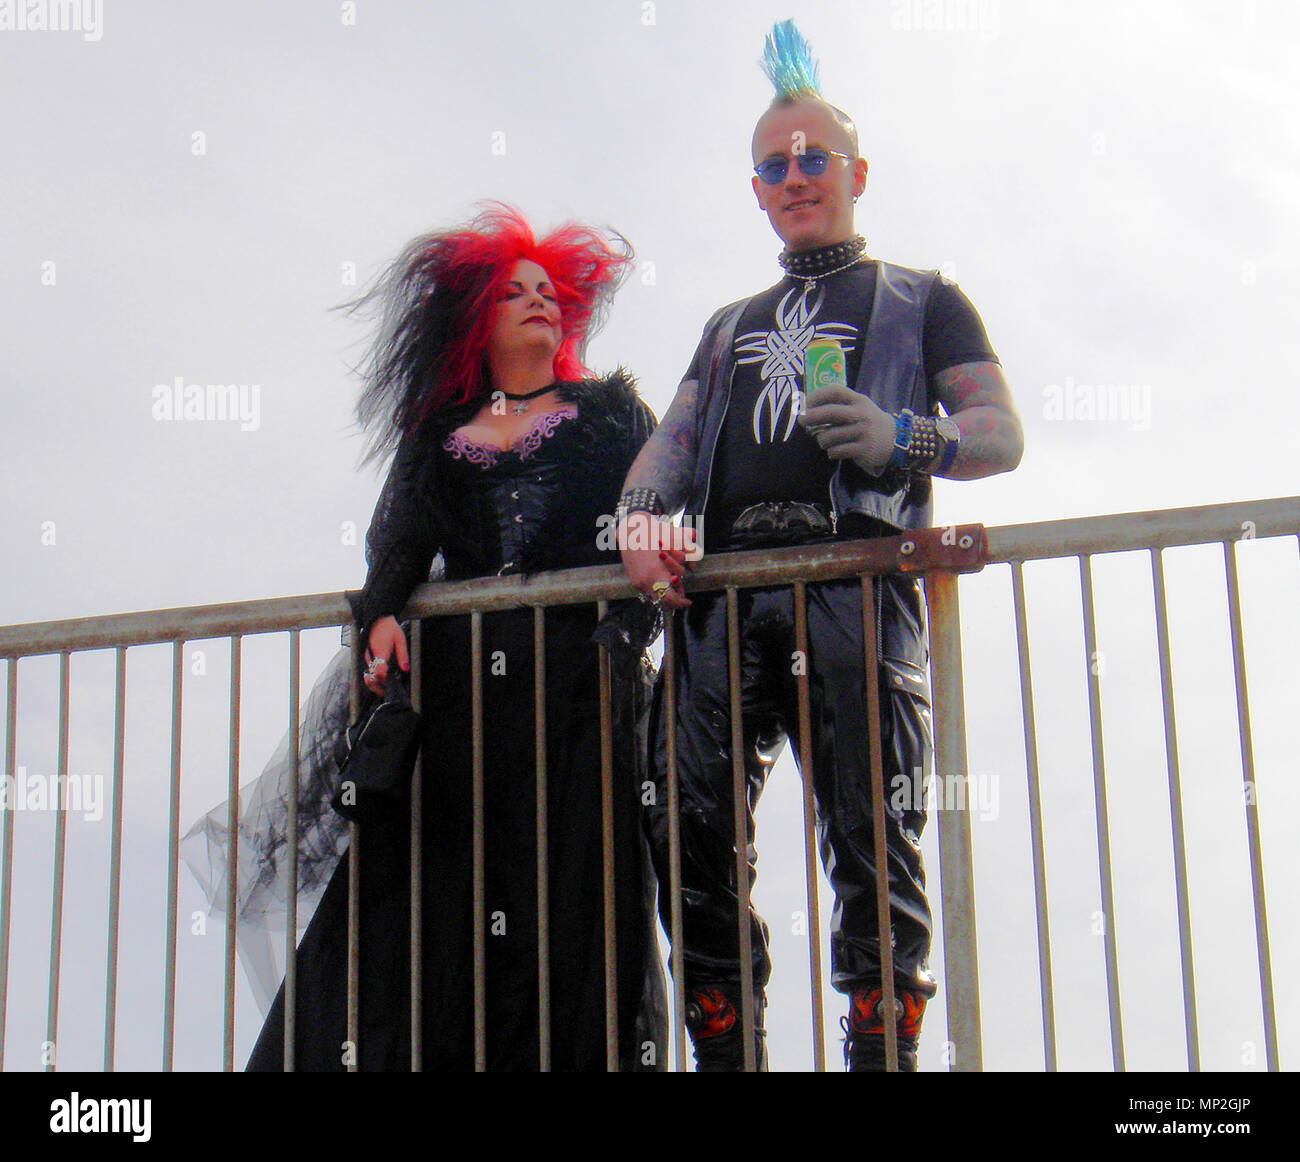 PUNK gotico-costumi di contrasto all'annuale festival Goth a Whitby, nello Yorkshire, Regno Unito Foto Stock